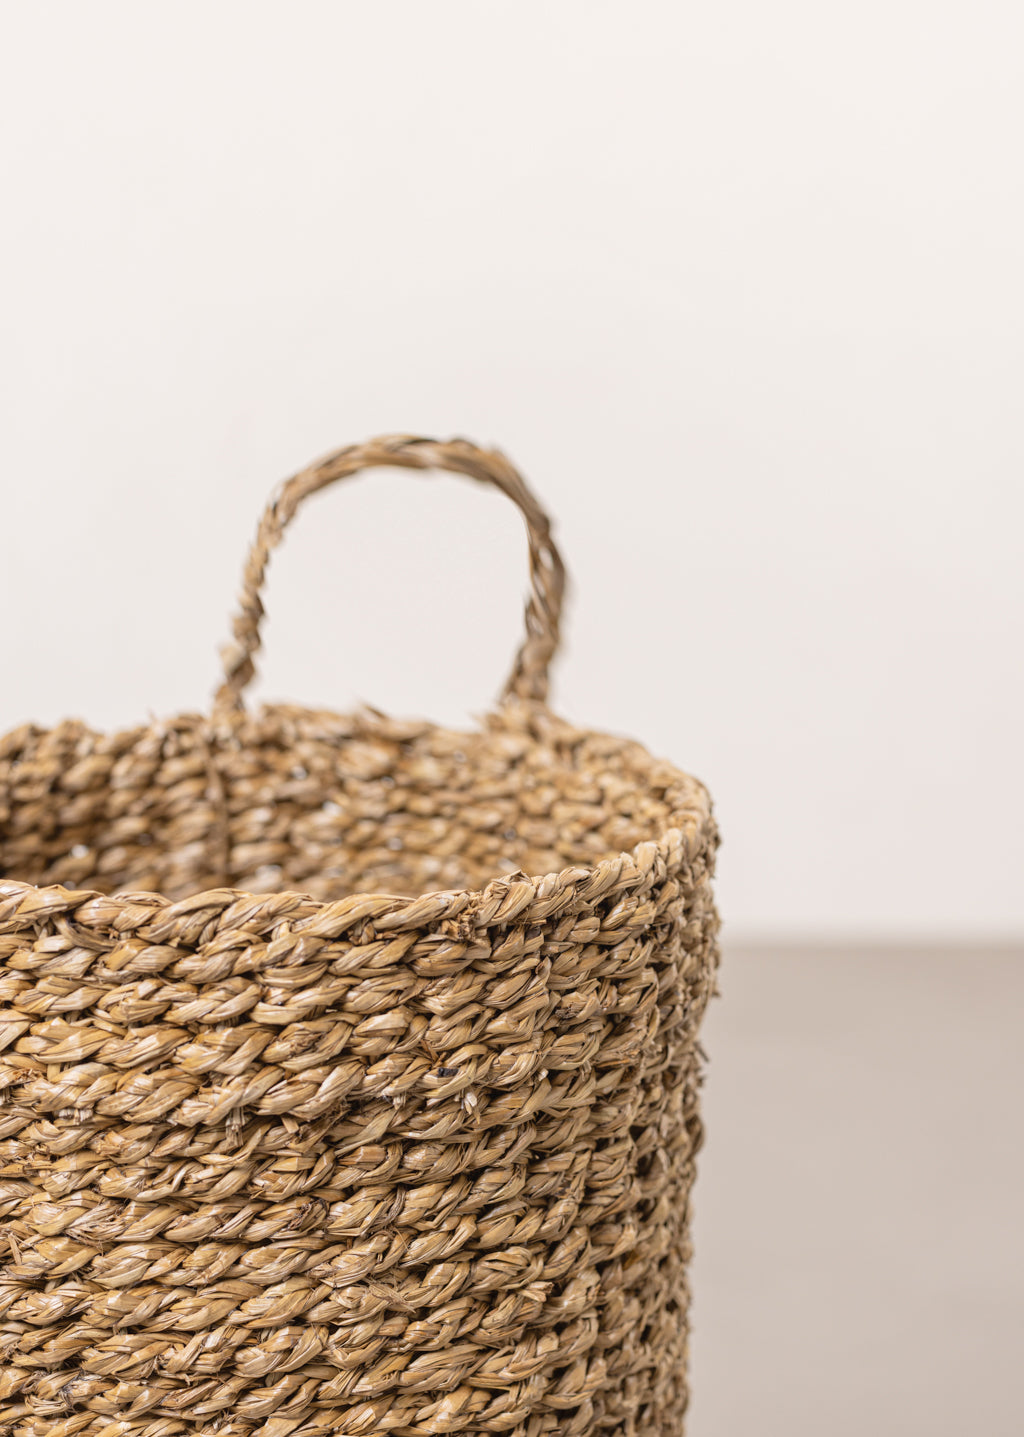 Hanging Seagrass Basket